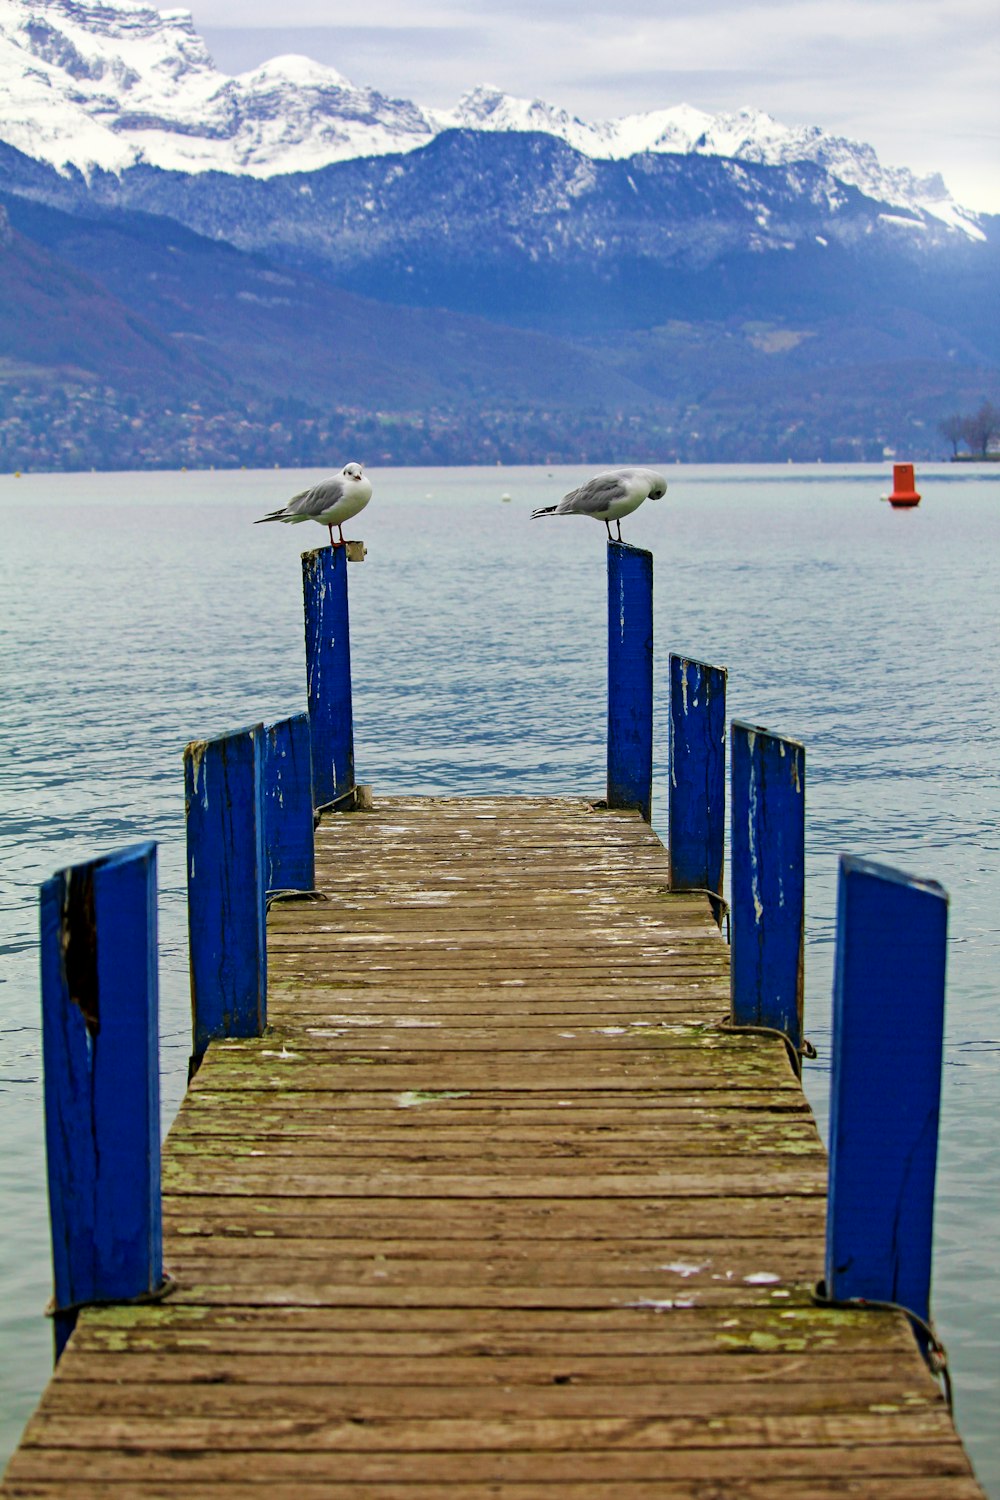 uccelli appollaiati sul palo del molo di legno vicino all'acqua